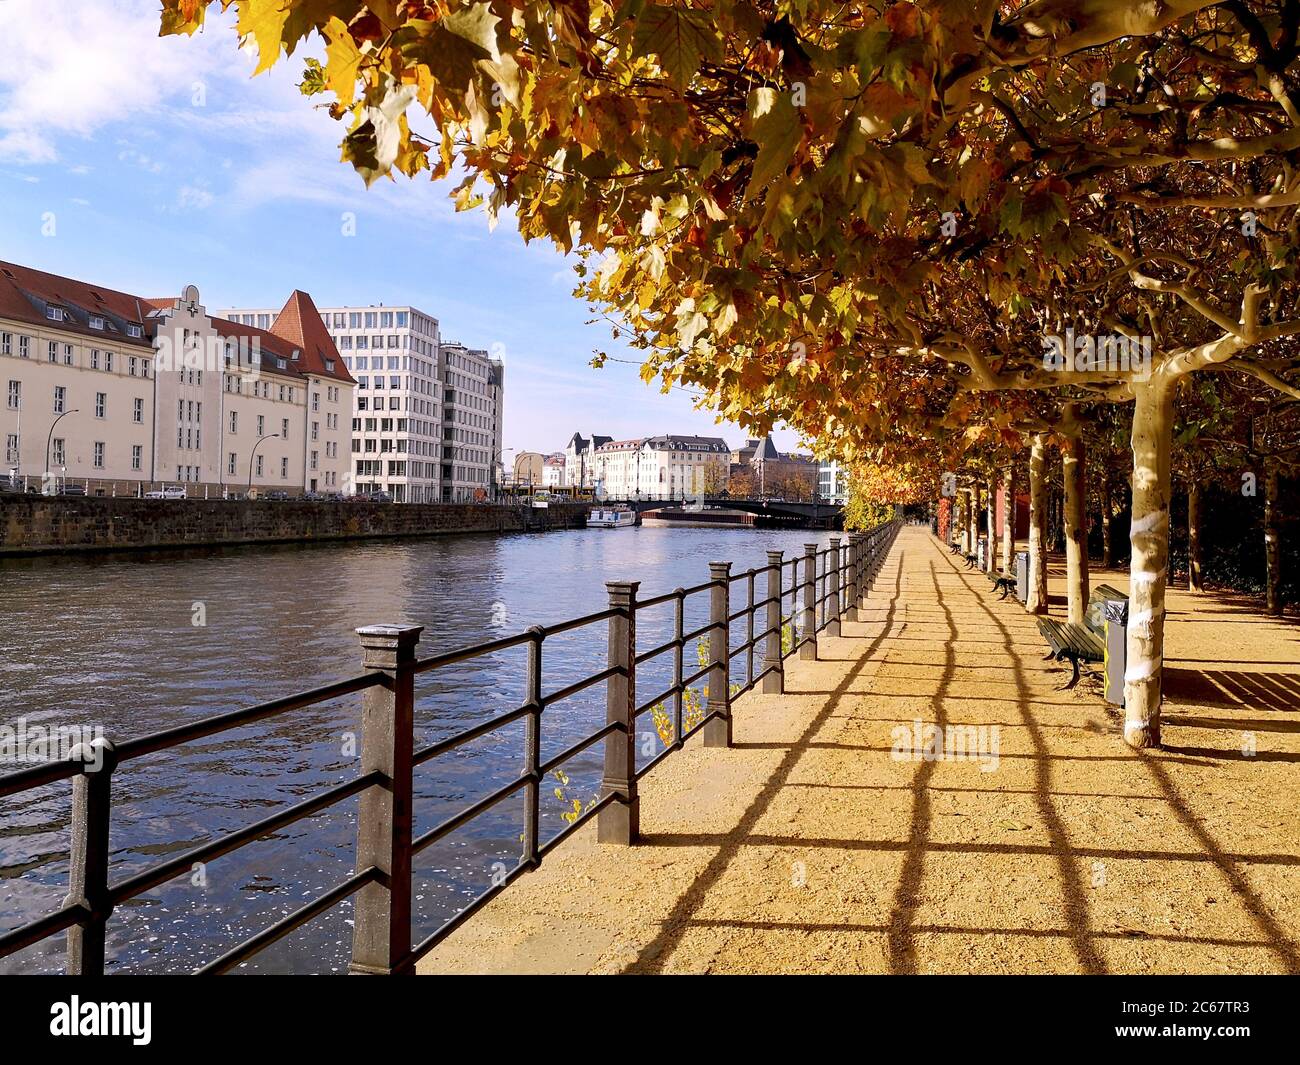 Promenade mit Metallgeländer, Holzbänke und Laubhalle mit herbstlich leuchtenden gelben und orangen Blättern am ruhigen Wasser des Landwehrkanals. Stockfoto